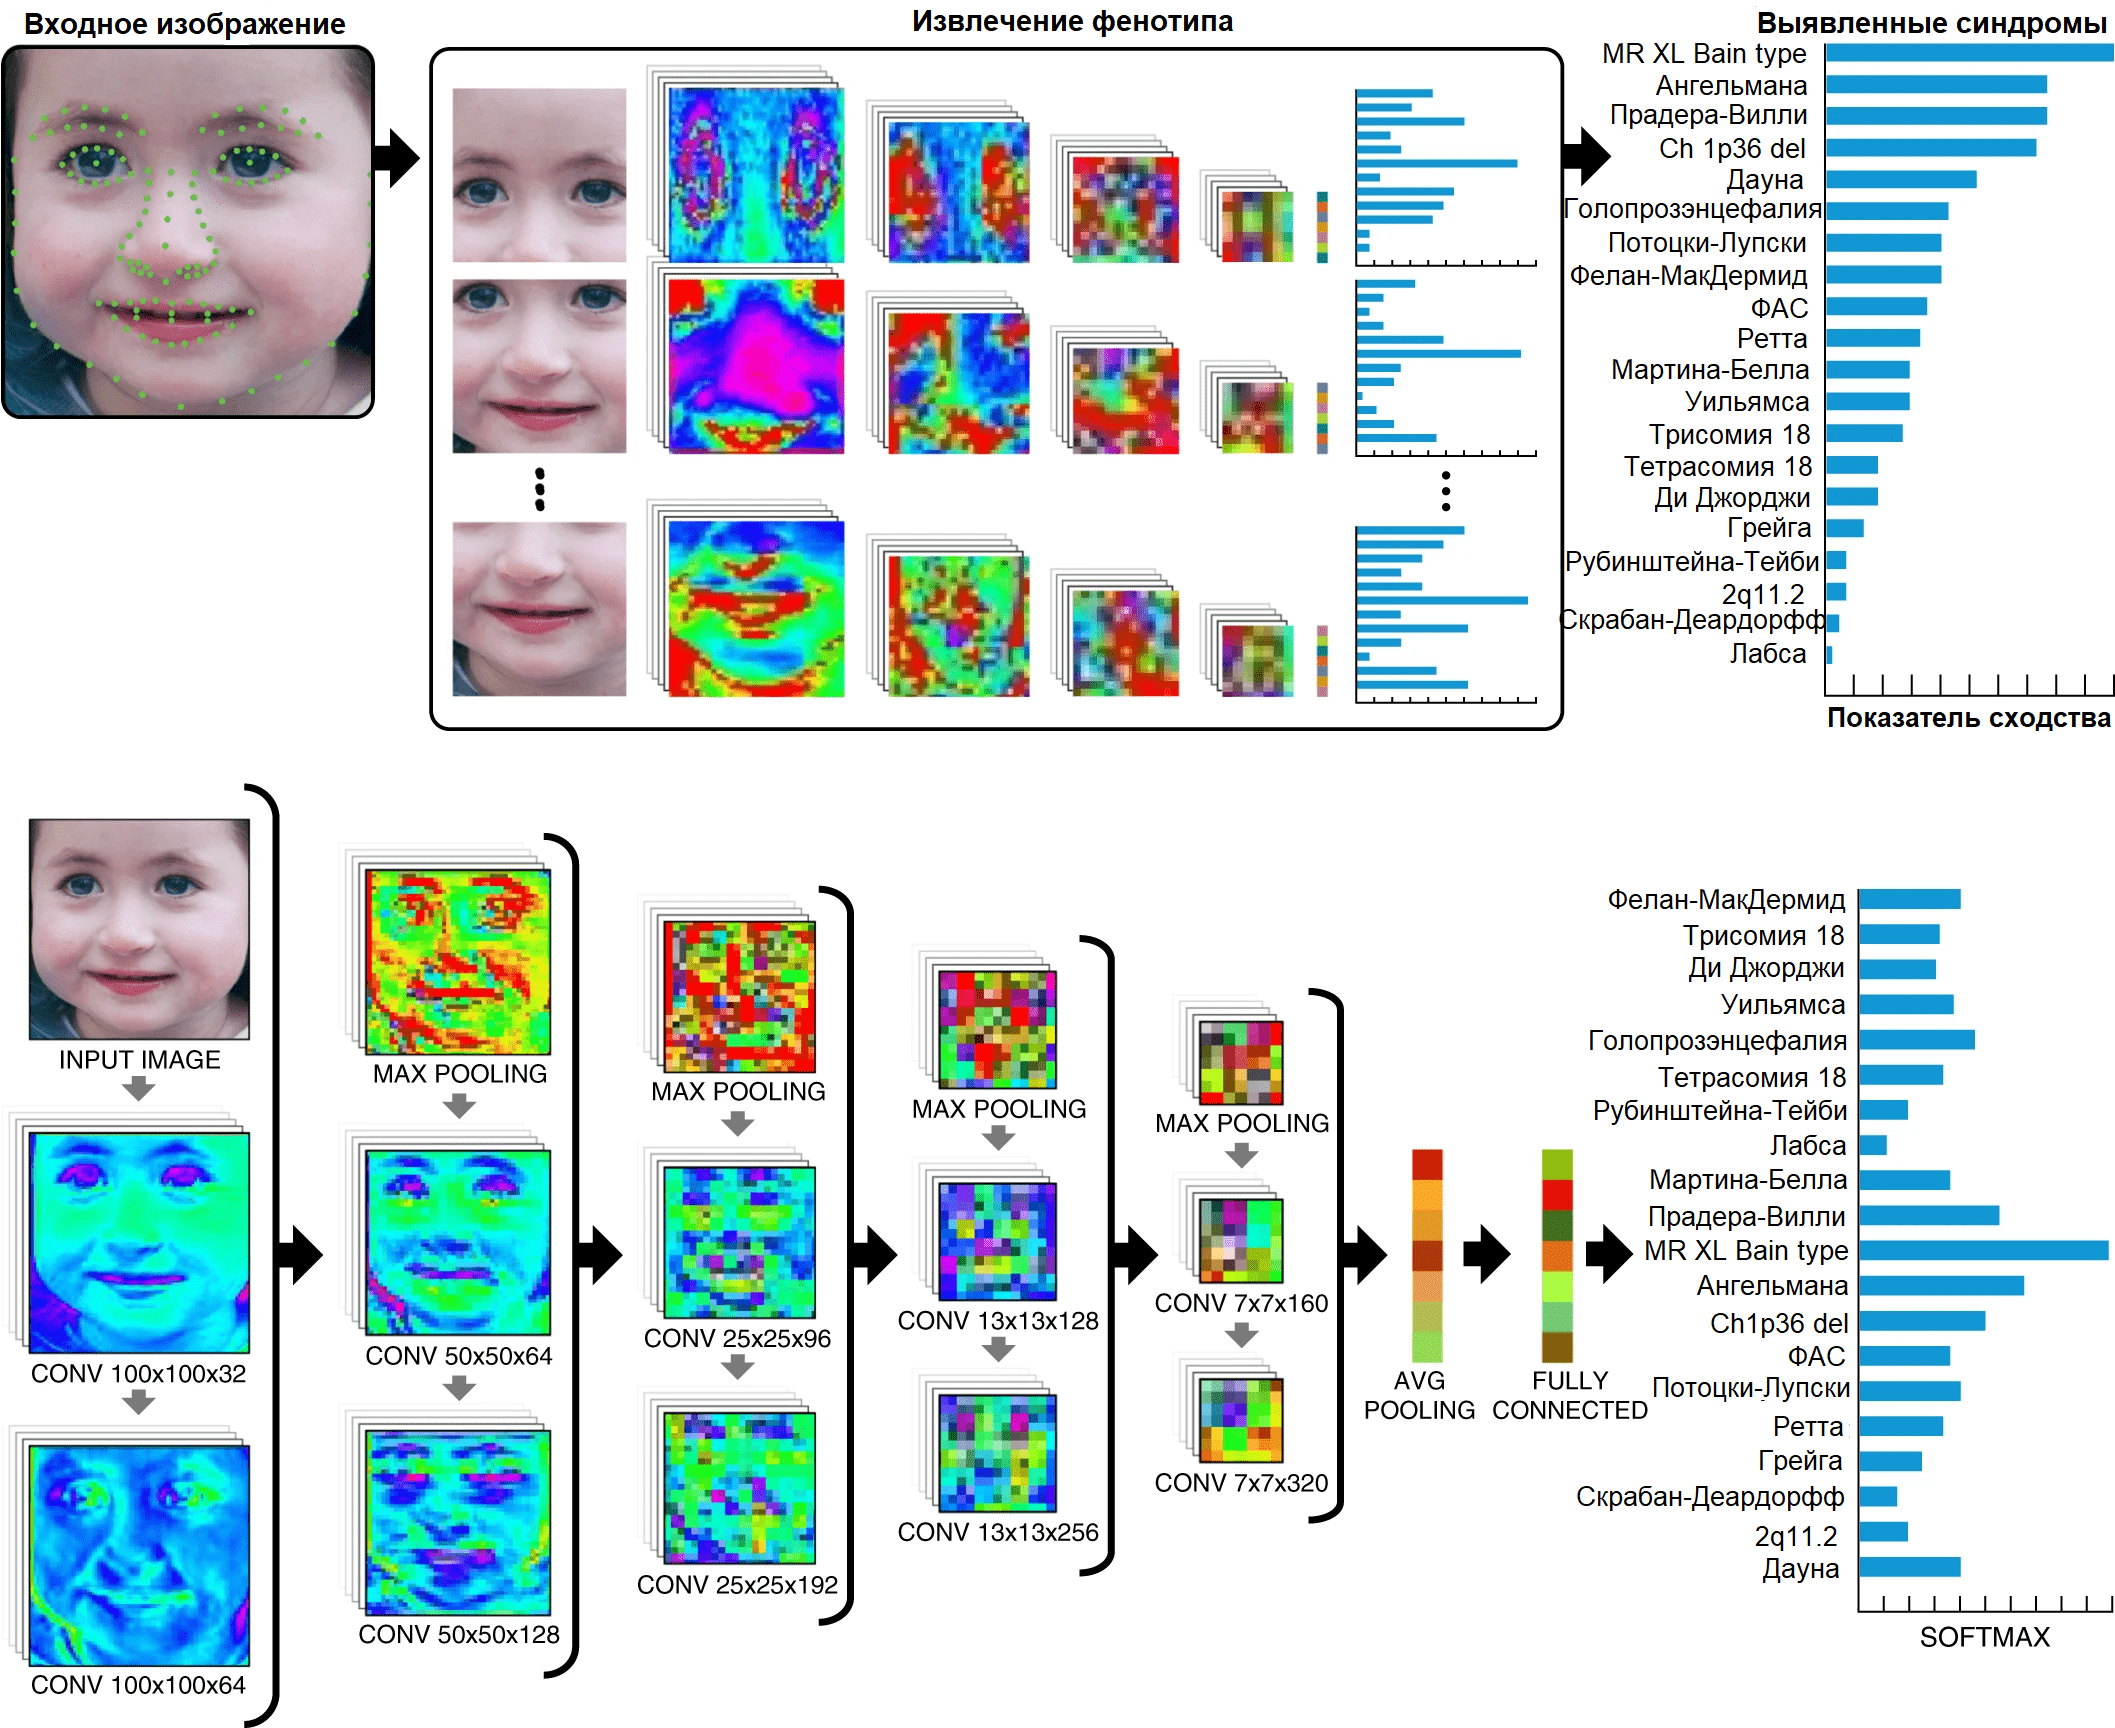 Этапы обработки изображения, подаваемого нейросети на вход